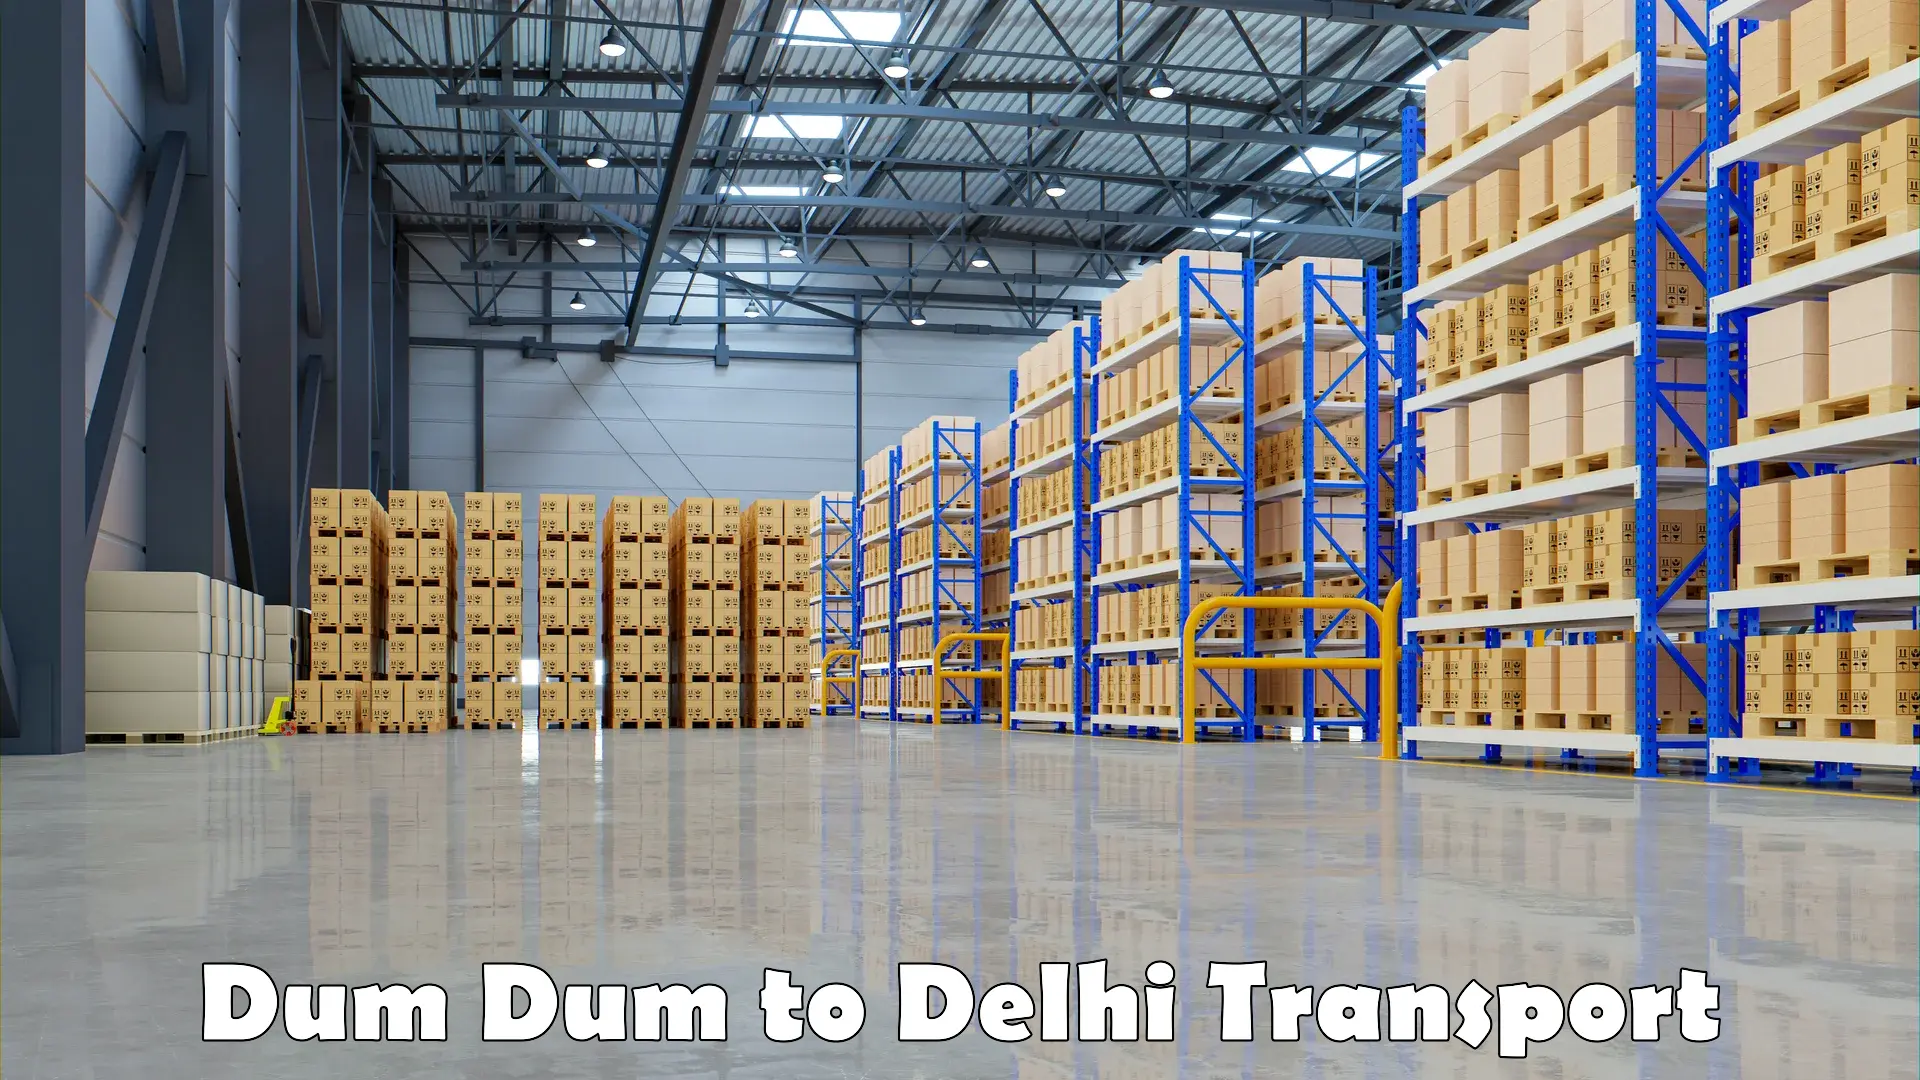 Furniture transport service Dum Dum to IIT Delhi